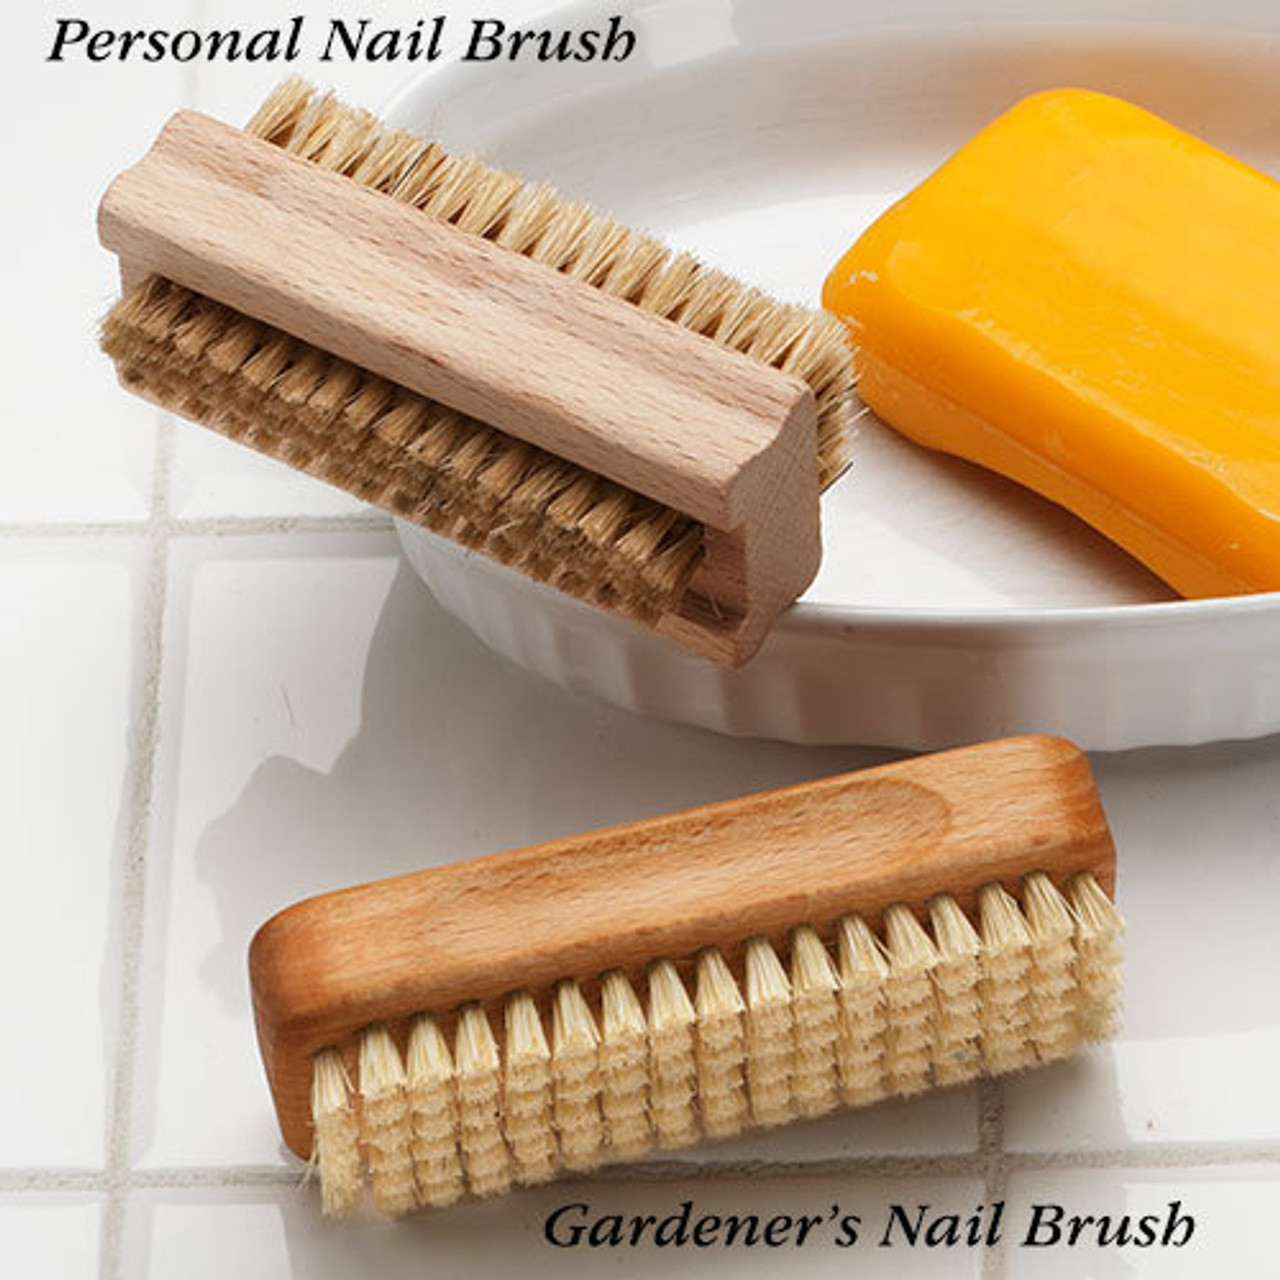 Personal Nail Brush